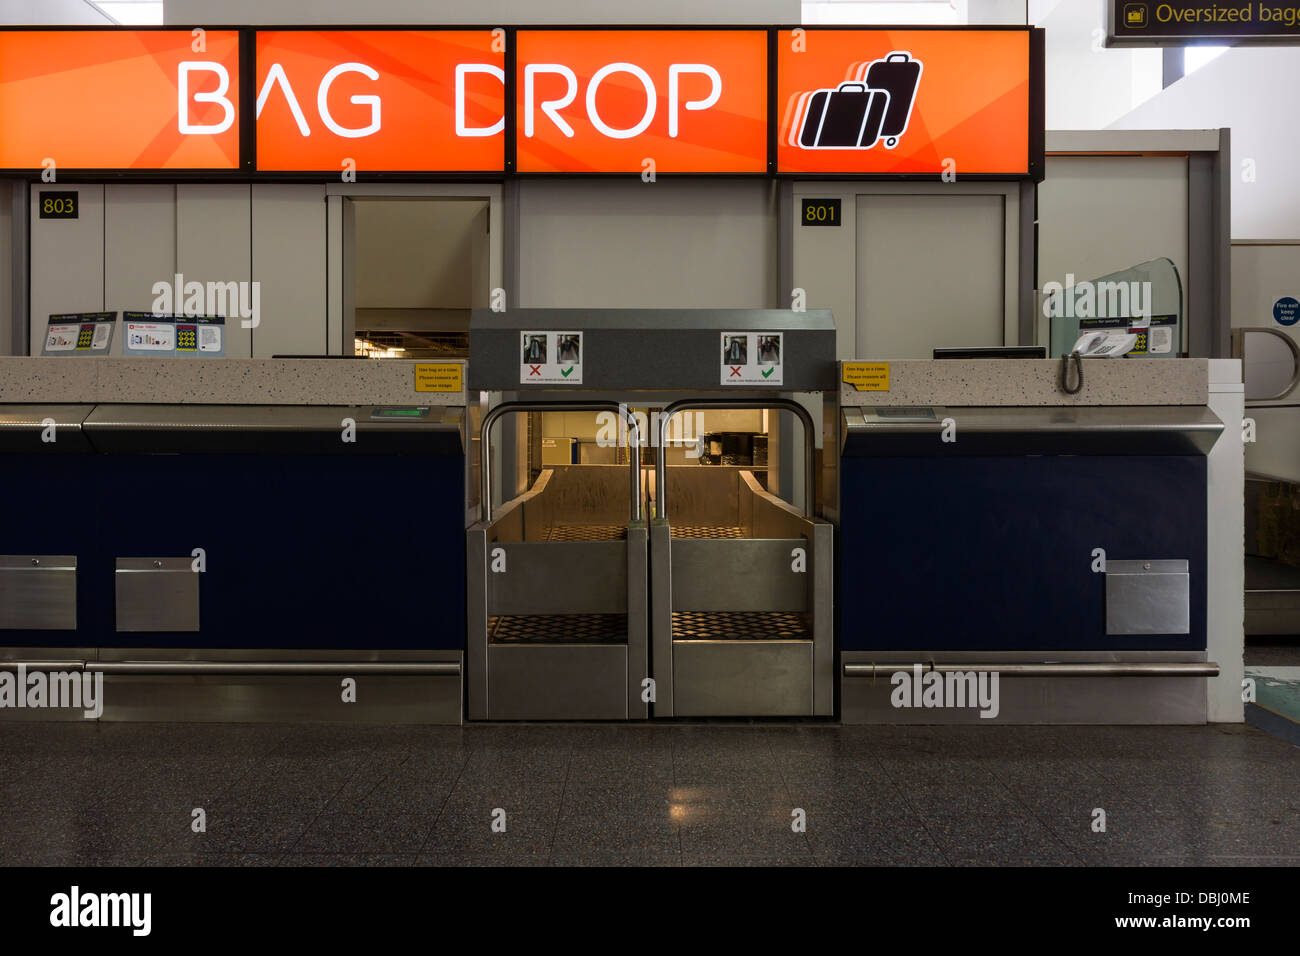 Un Budget Airline Bag Drop Point à l'aéroport de Gatwick, Londres - Angleterre. Banque D'Images